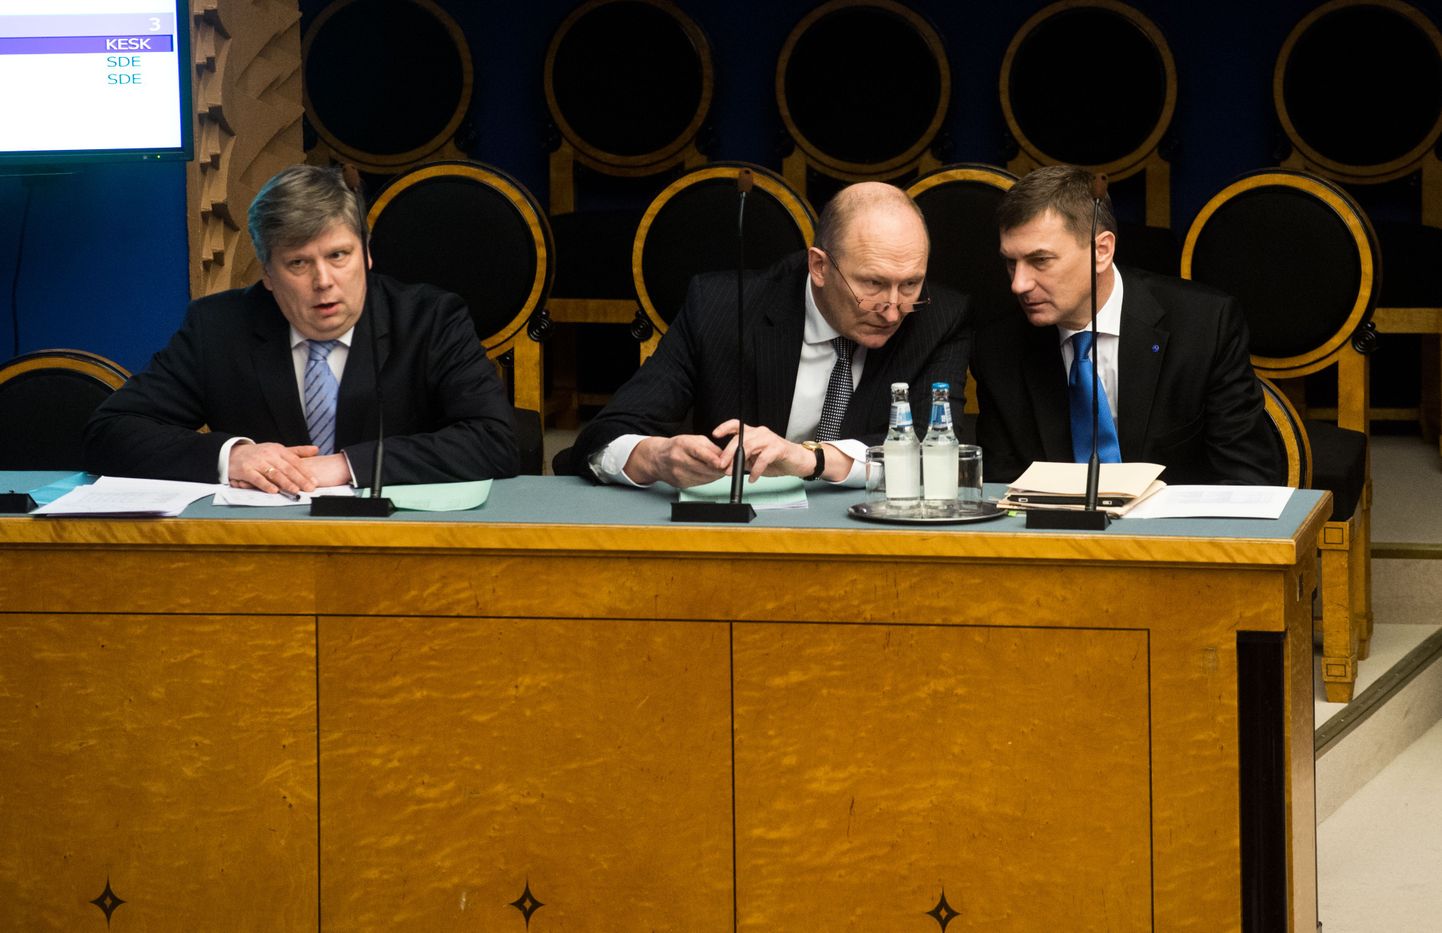 Министры Сийм-Валмар Кийслер, Яак Аавиксоо и Андрус Ансип присутствуют на заседании Рийгикогу.